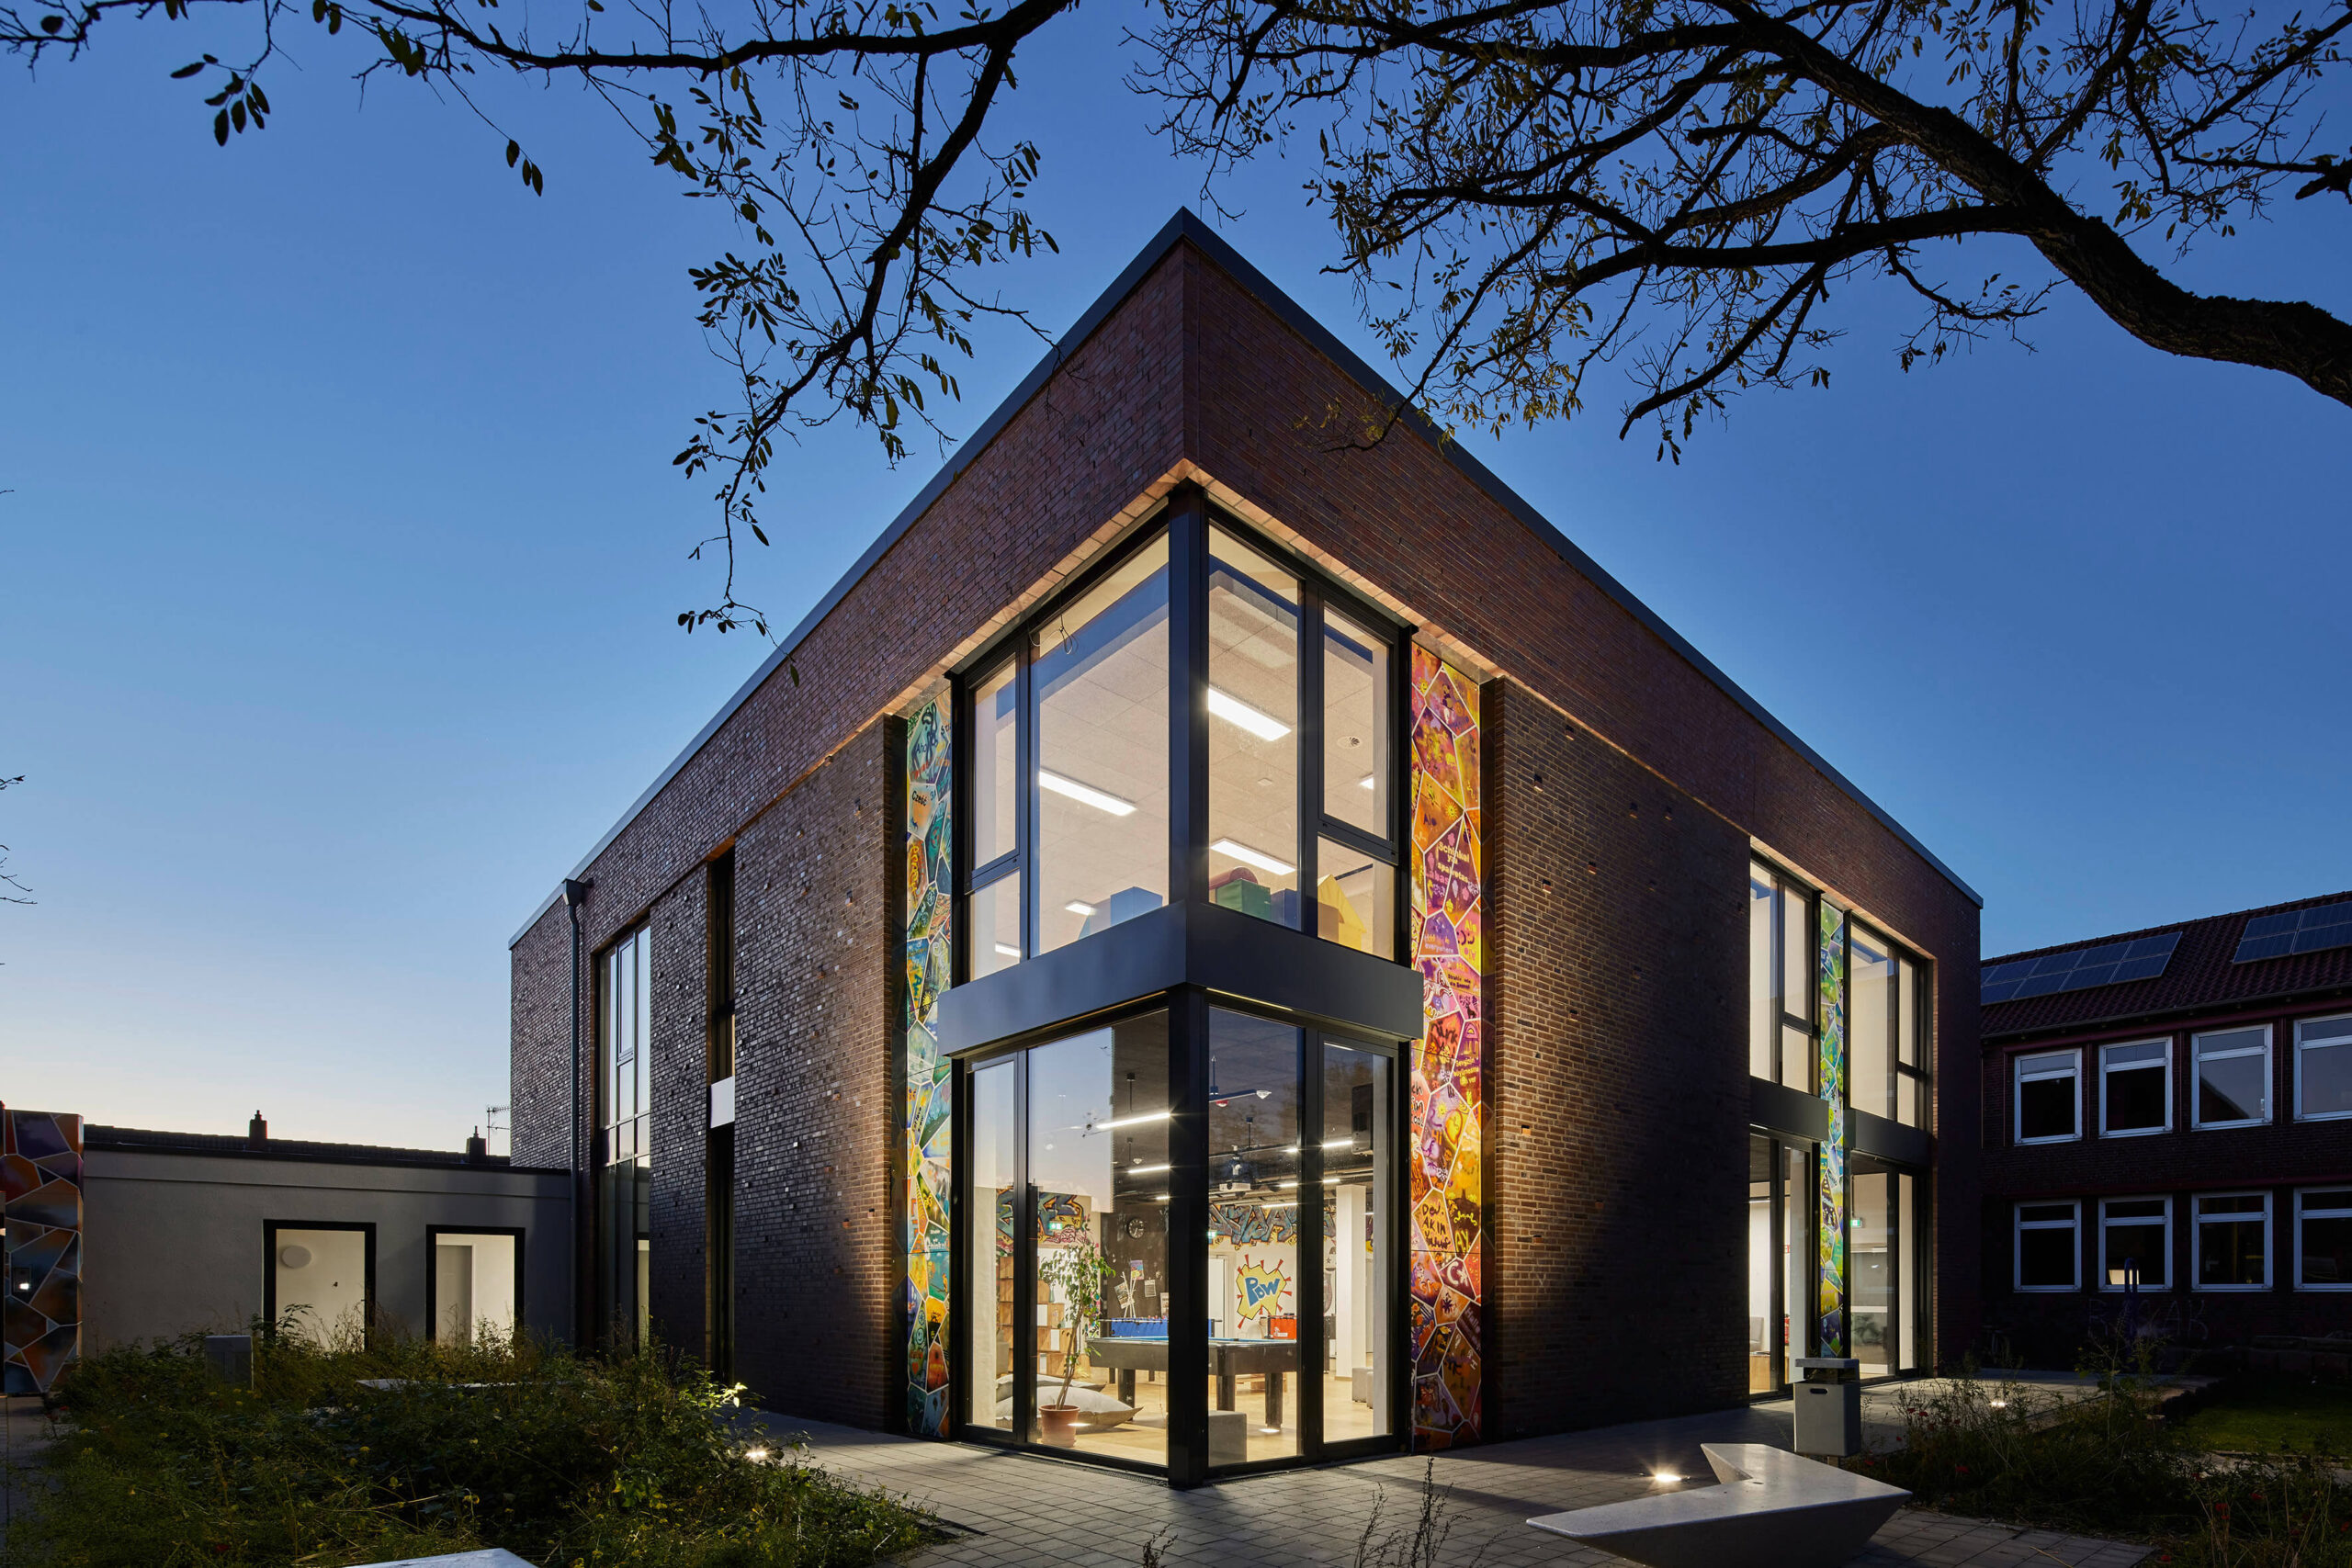 Neubau mit moderner Klinkerfassade | Architektur in Osnabrück